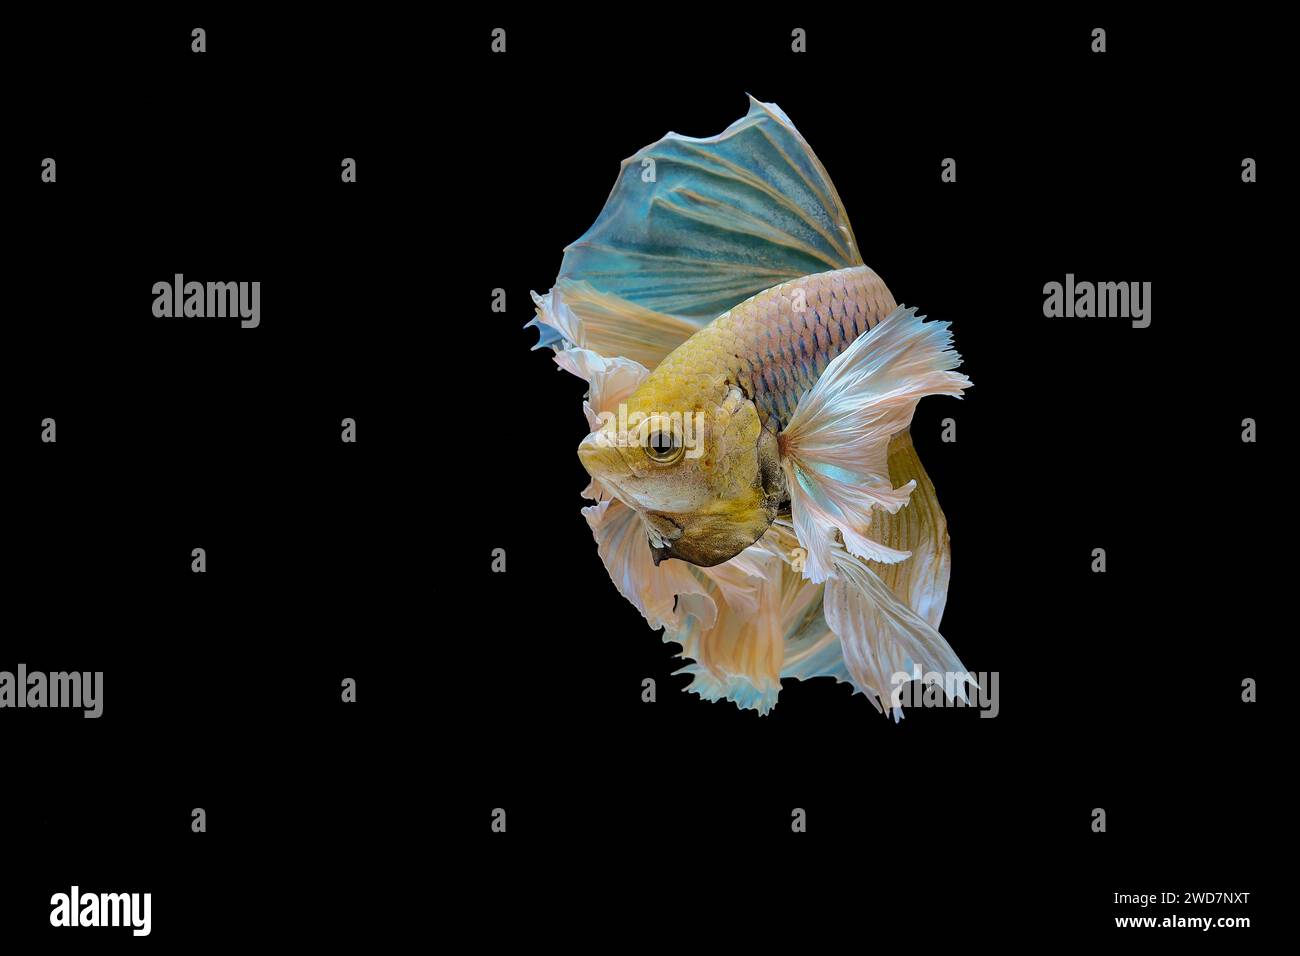 Yellow betta fish swimming in aquarium Stock Photo